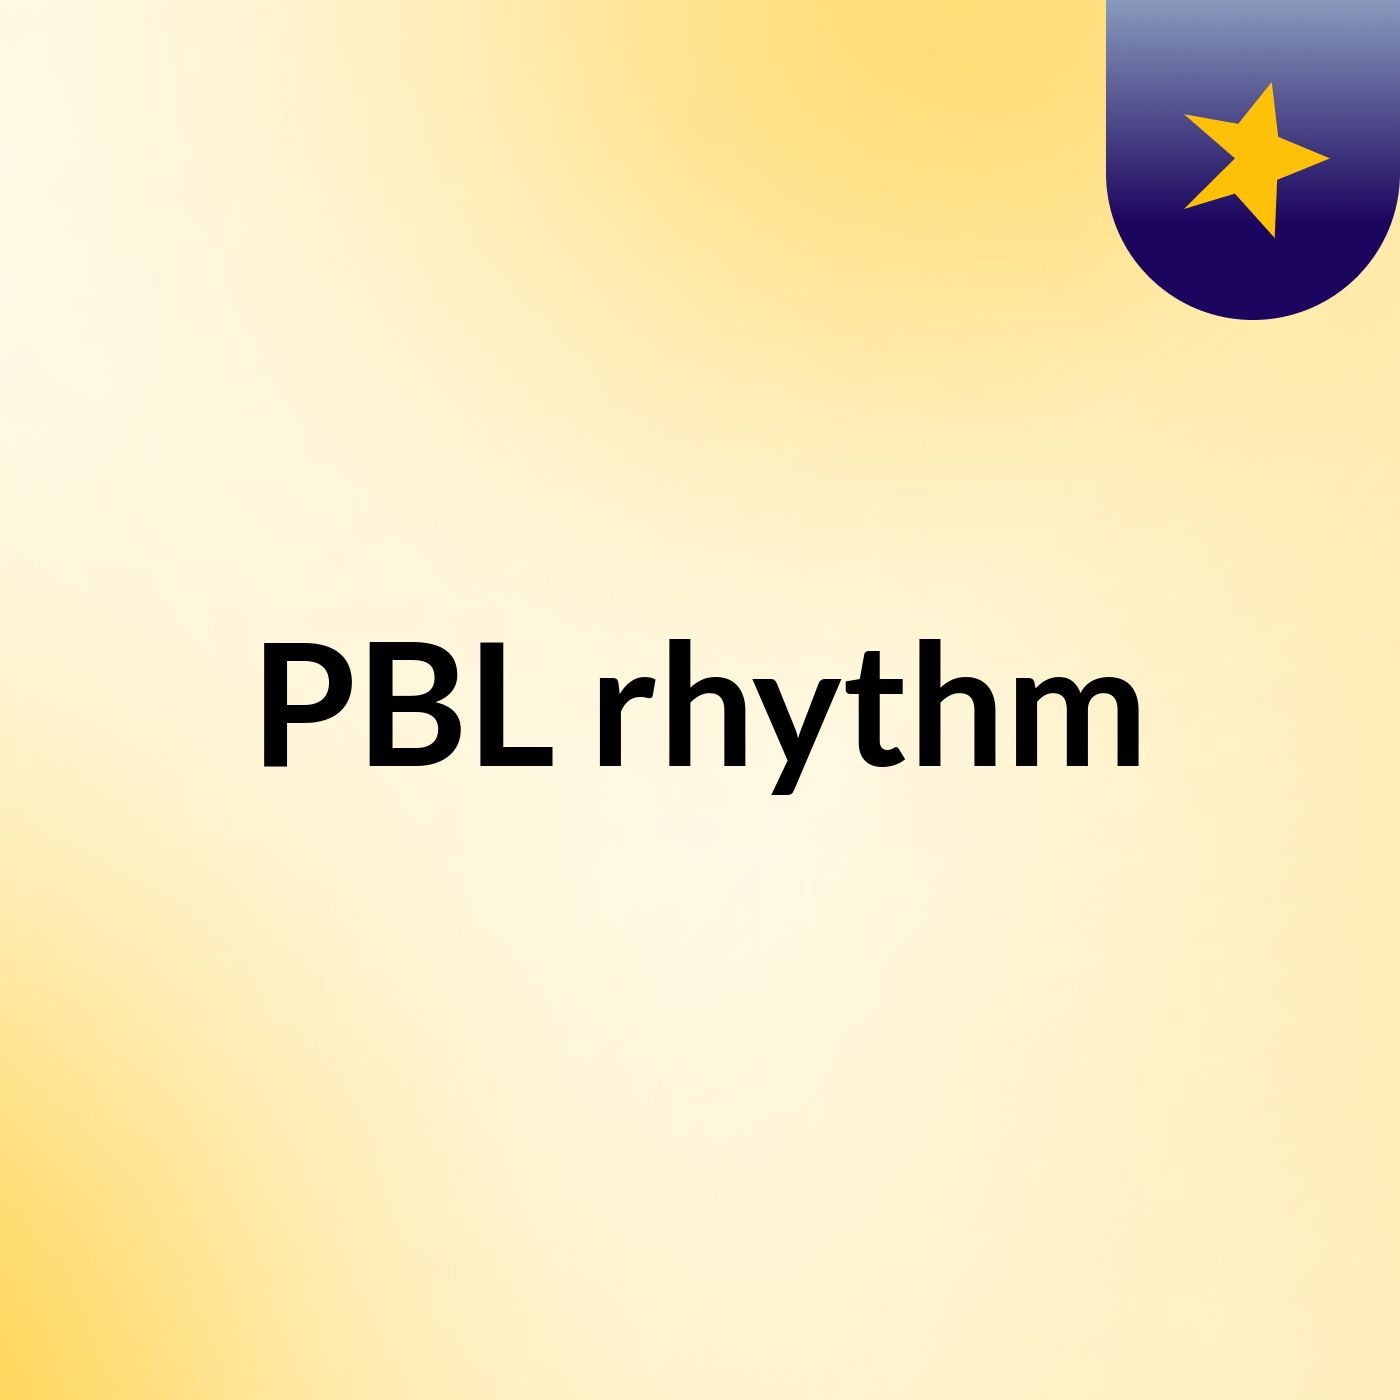 PBL rhythm